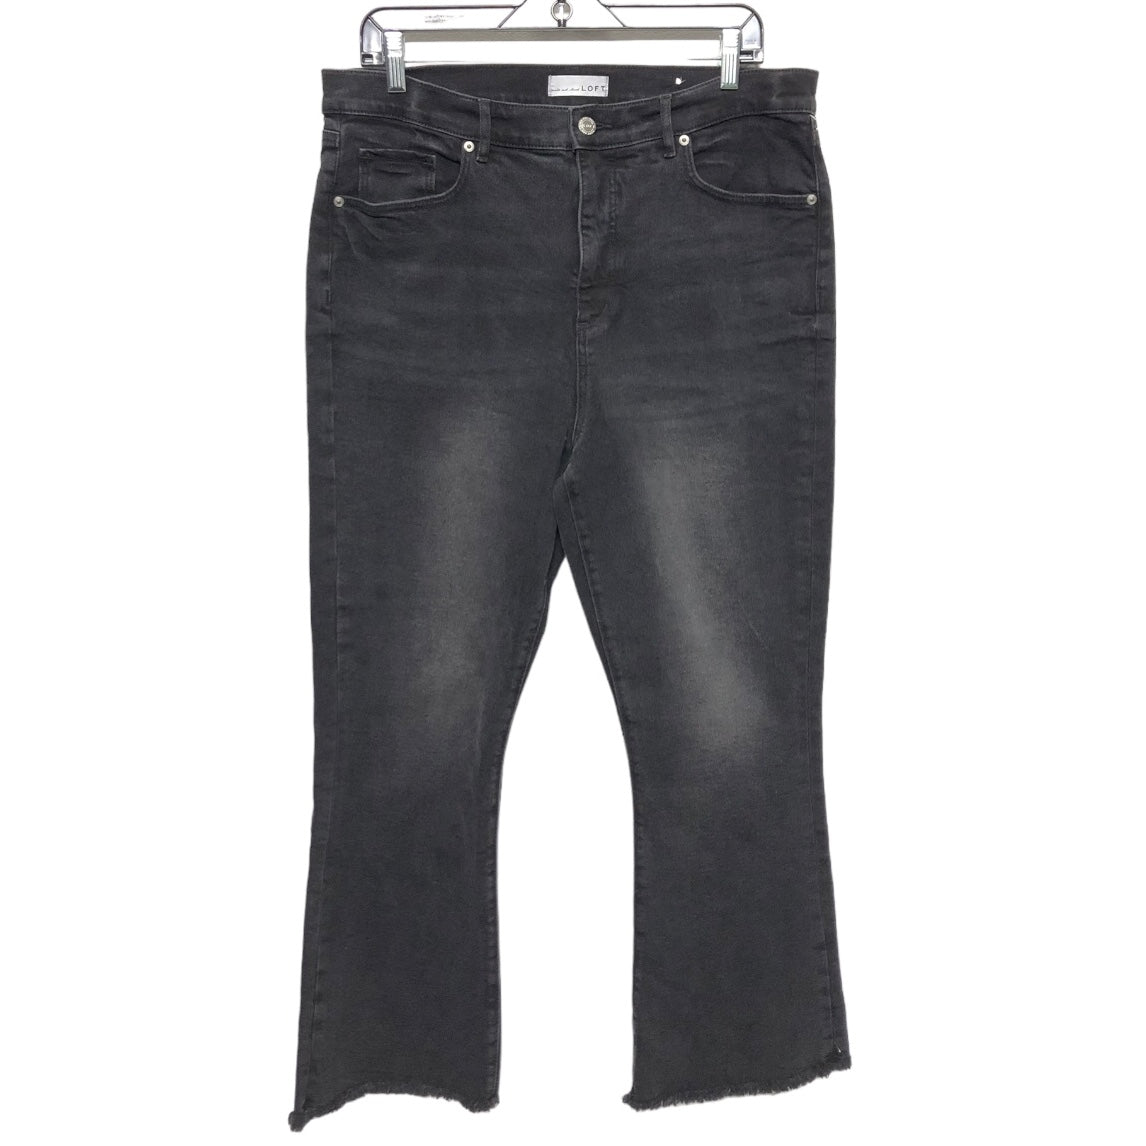 Jeans Cropped By Loft  Size: 14